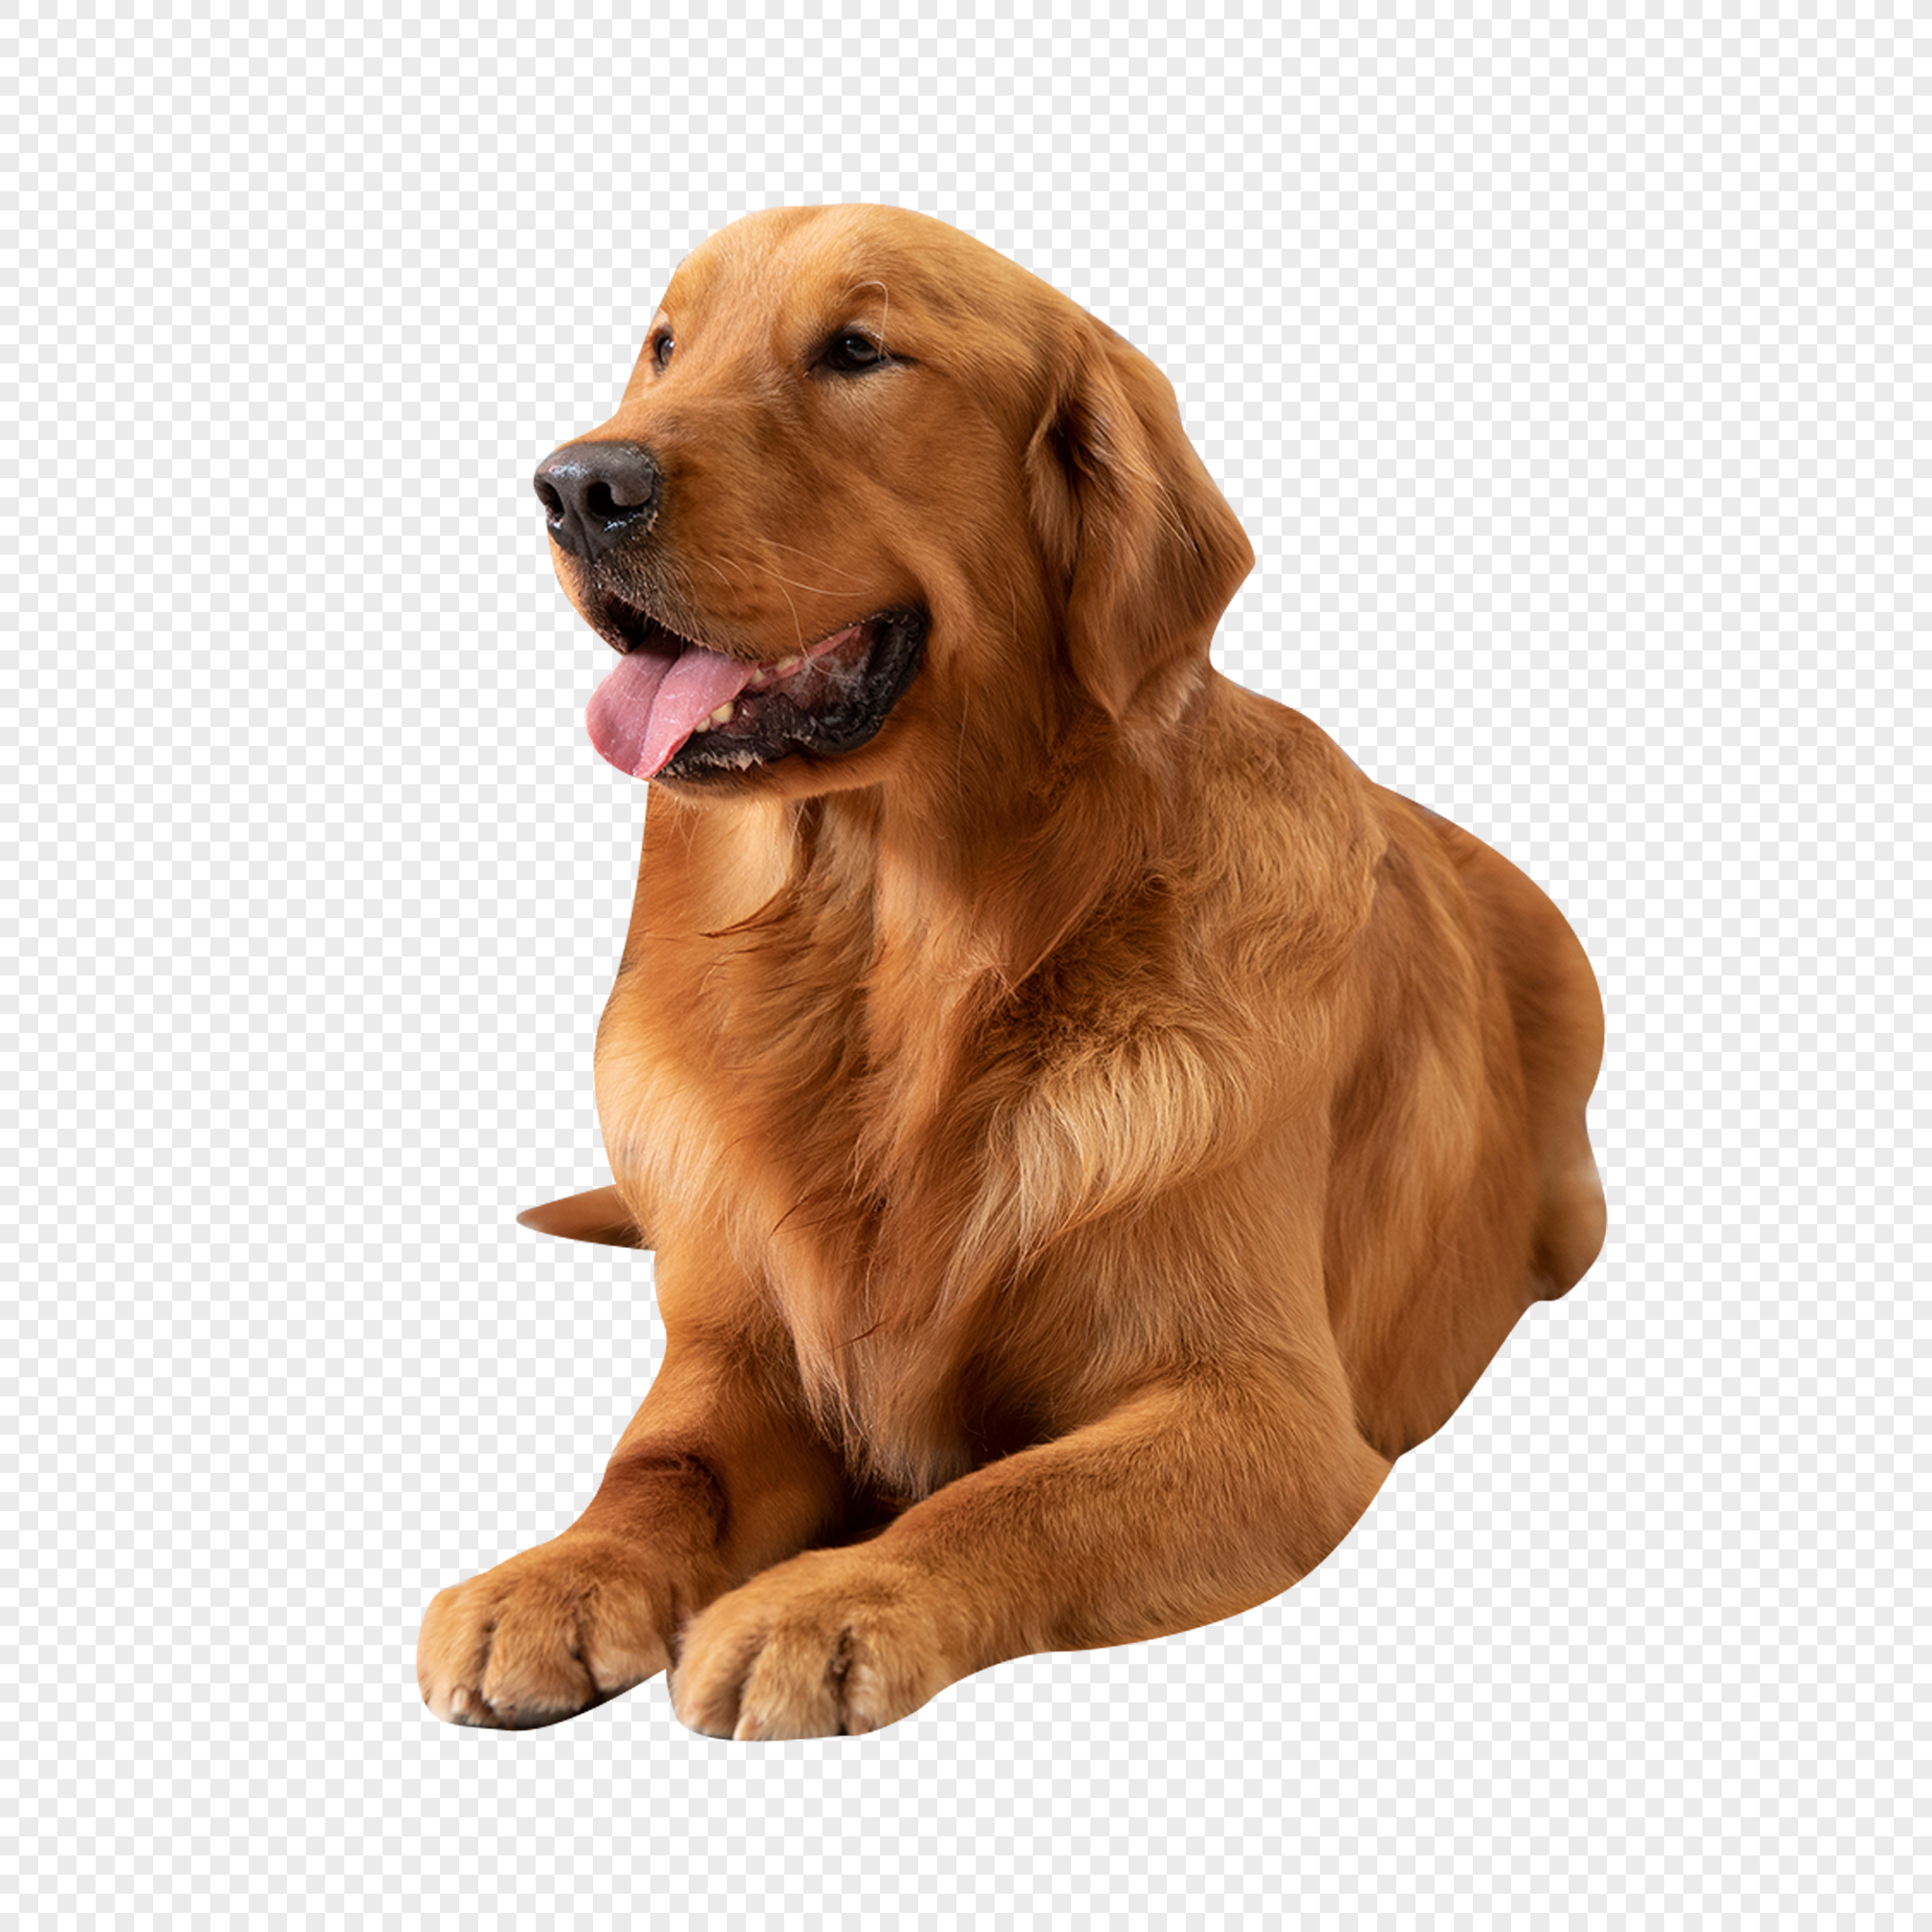 dog transparent background